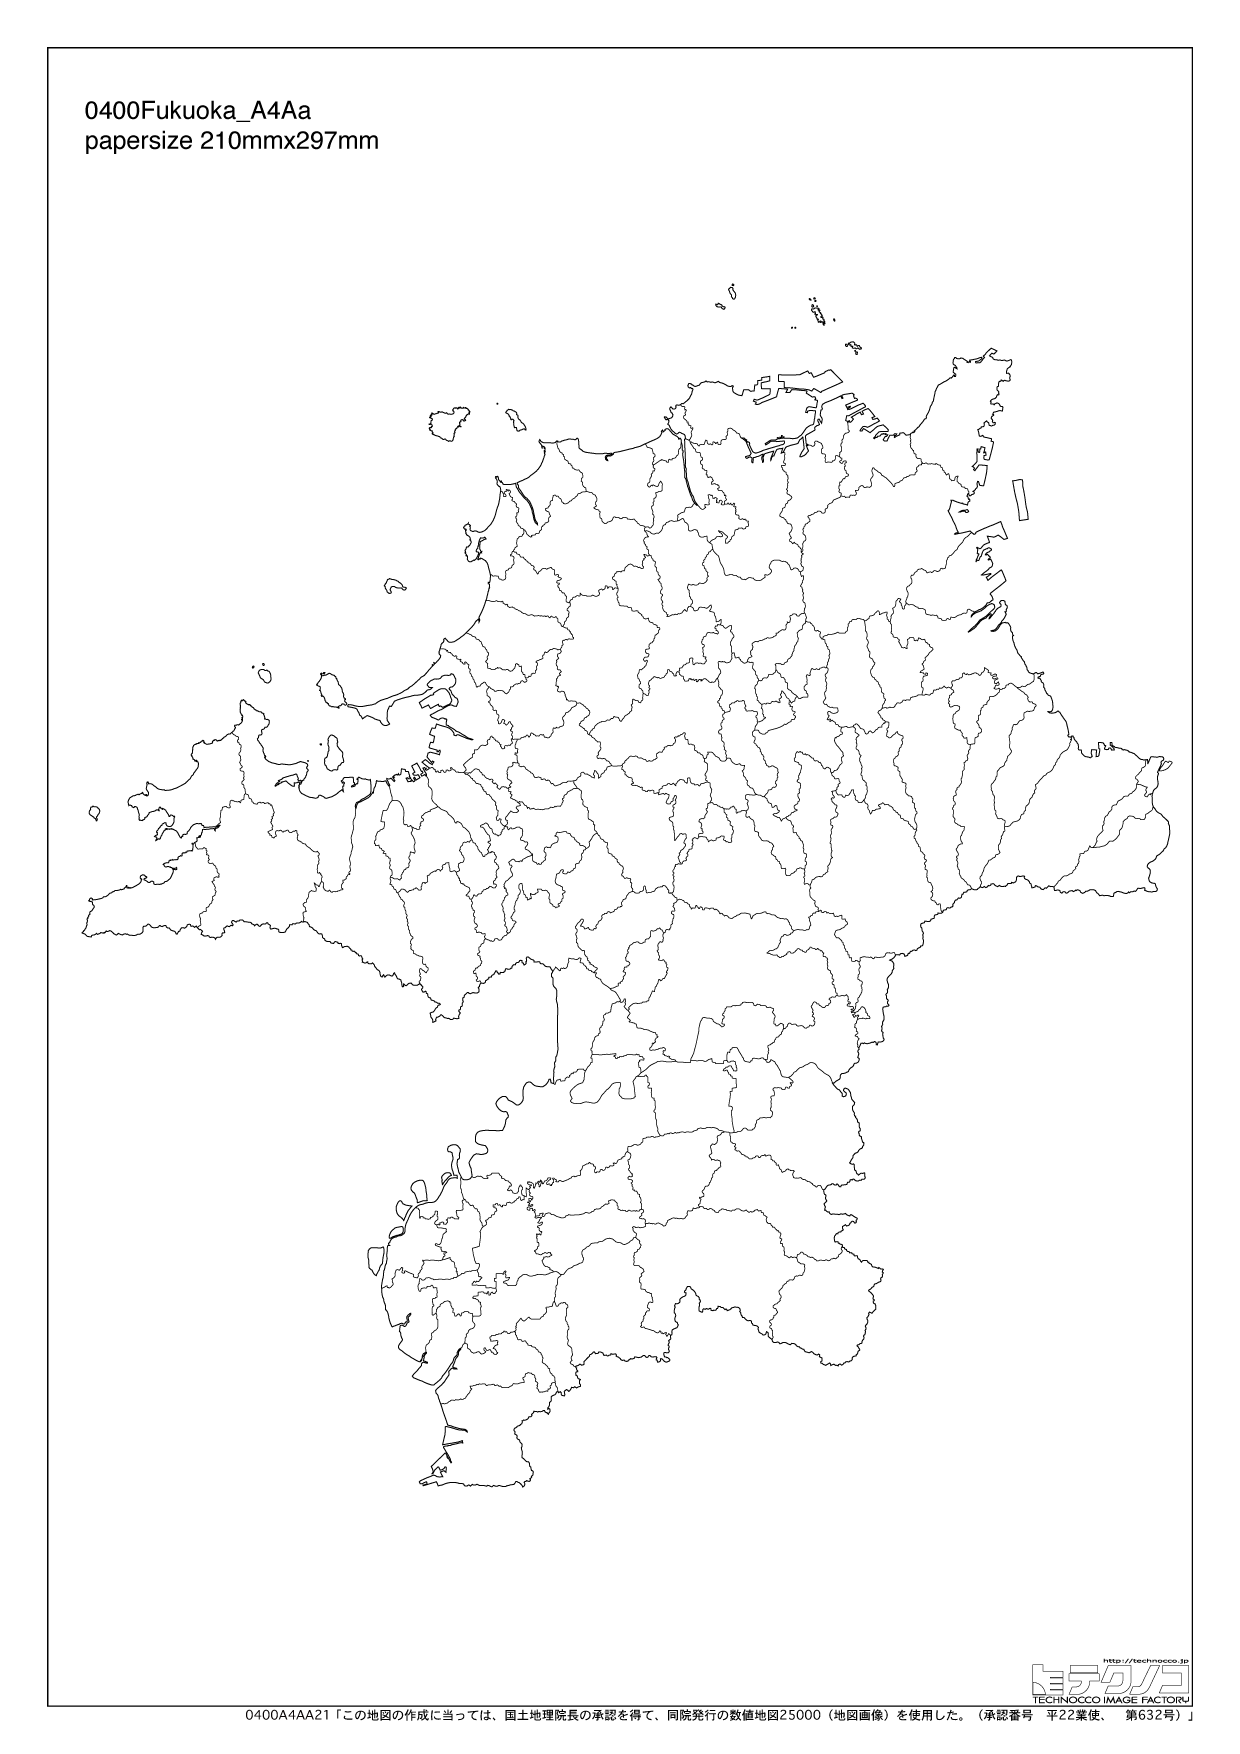 福岡県の白地図と市町村の合併情報